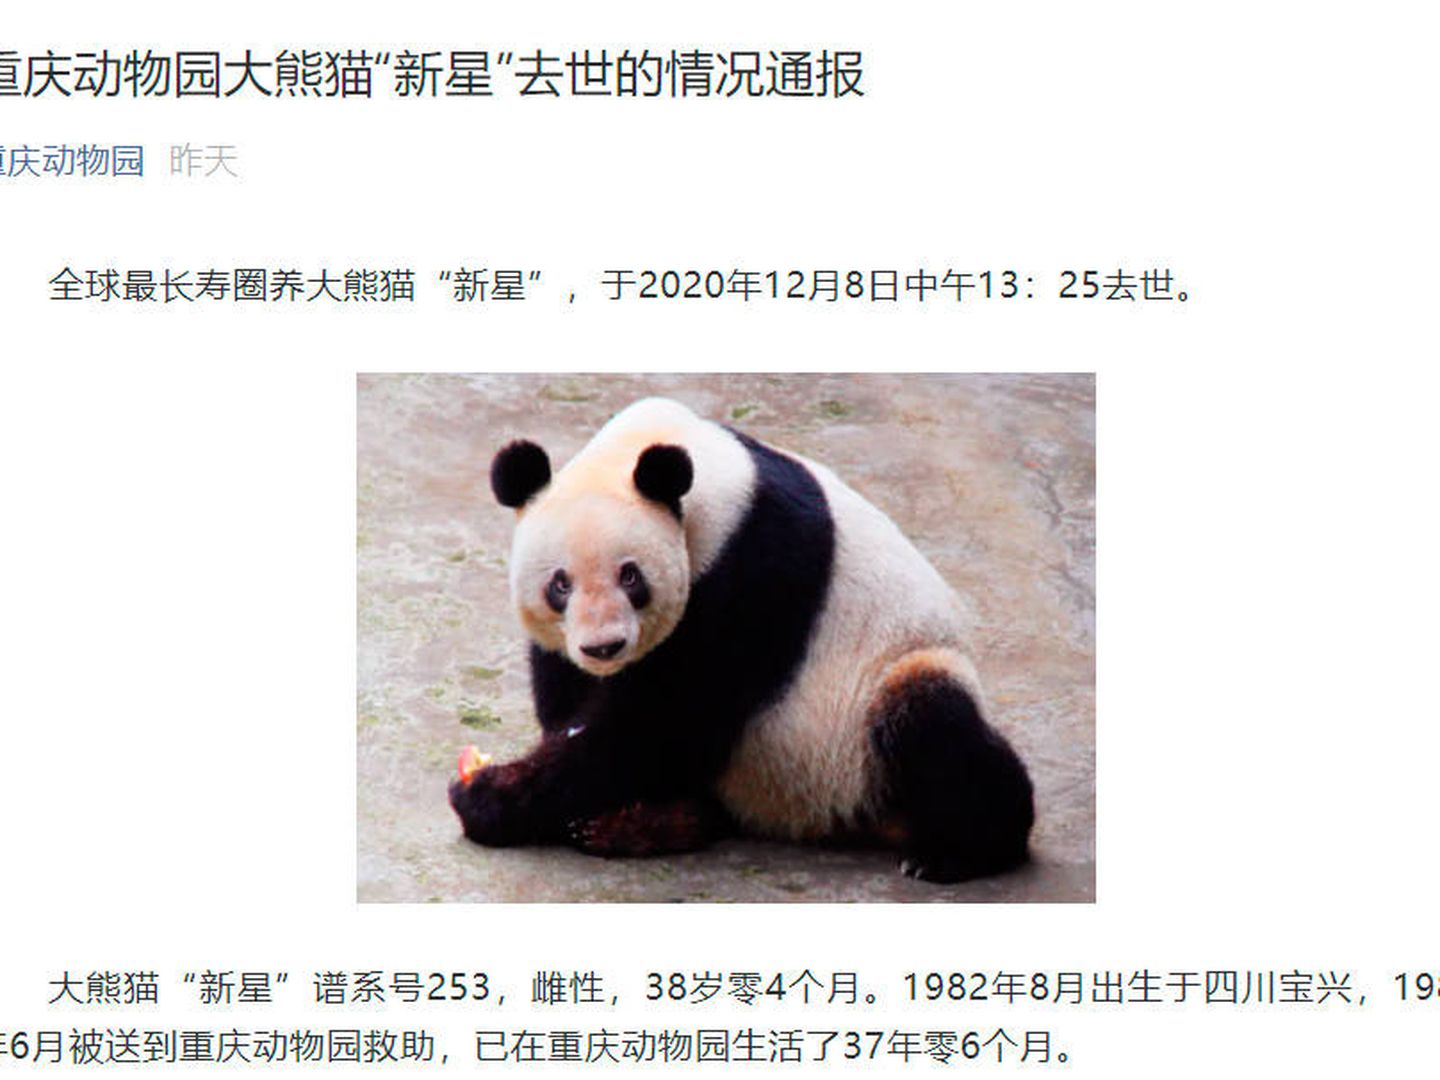 Así comunicó el zoo el fallecimiento de Xin Xing